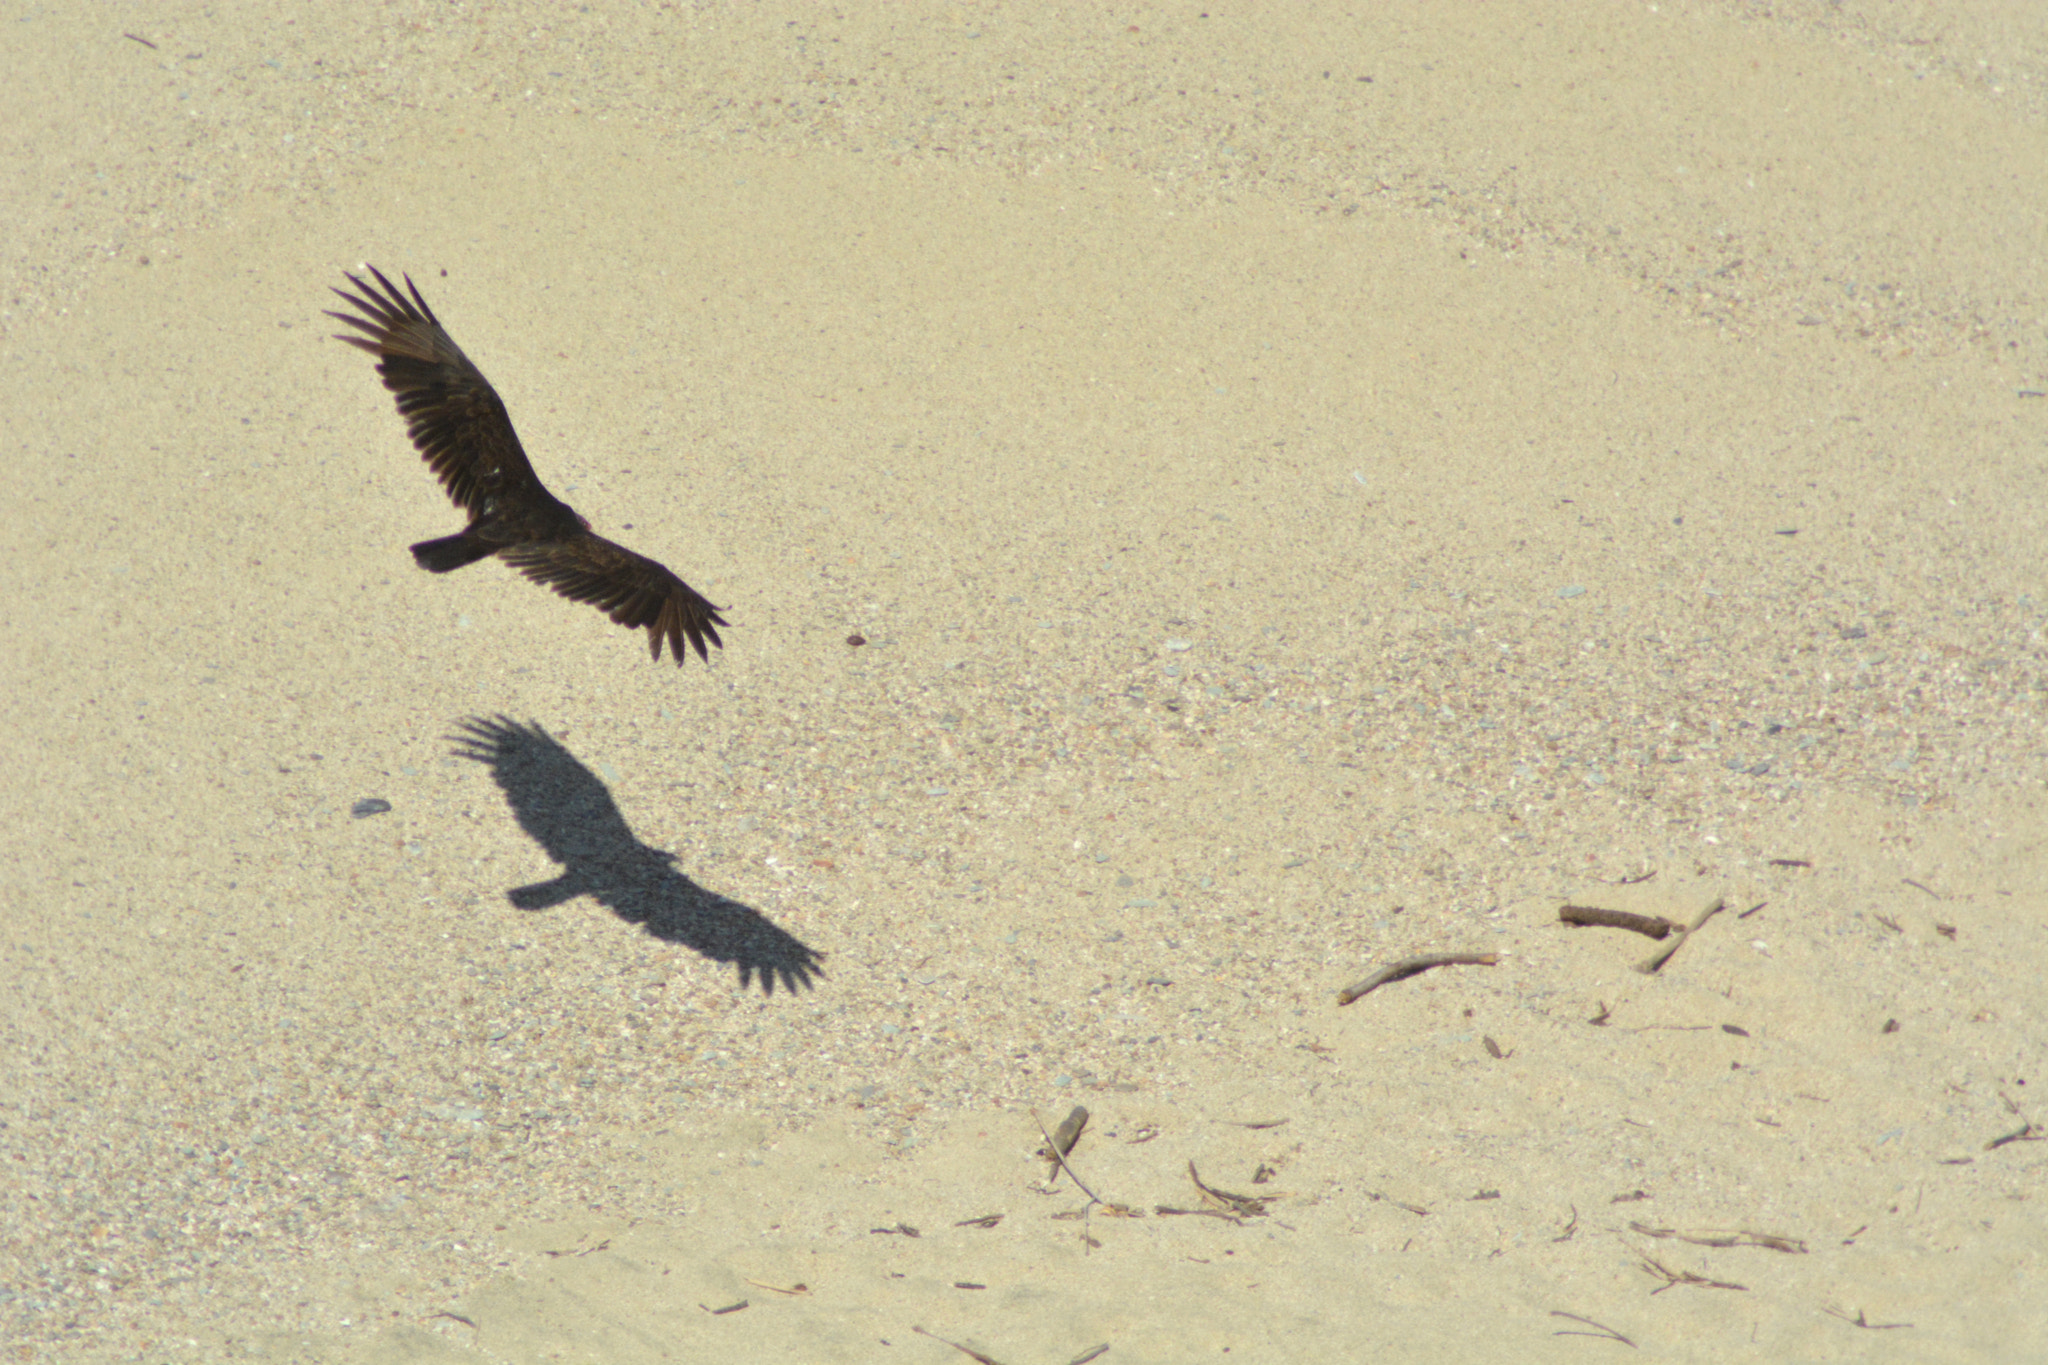 Nikon D5200 + Nikon AF Nikkor 70-300mm F4-5.6G sample photo. Vulture in flight over the sand photography